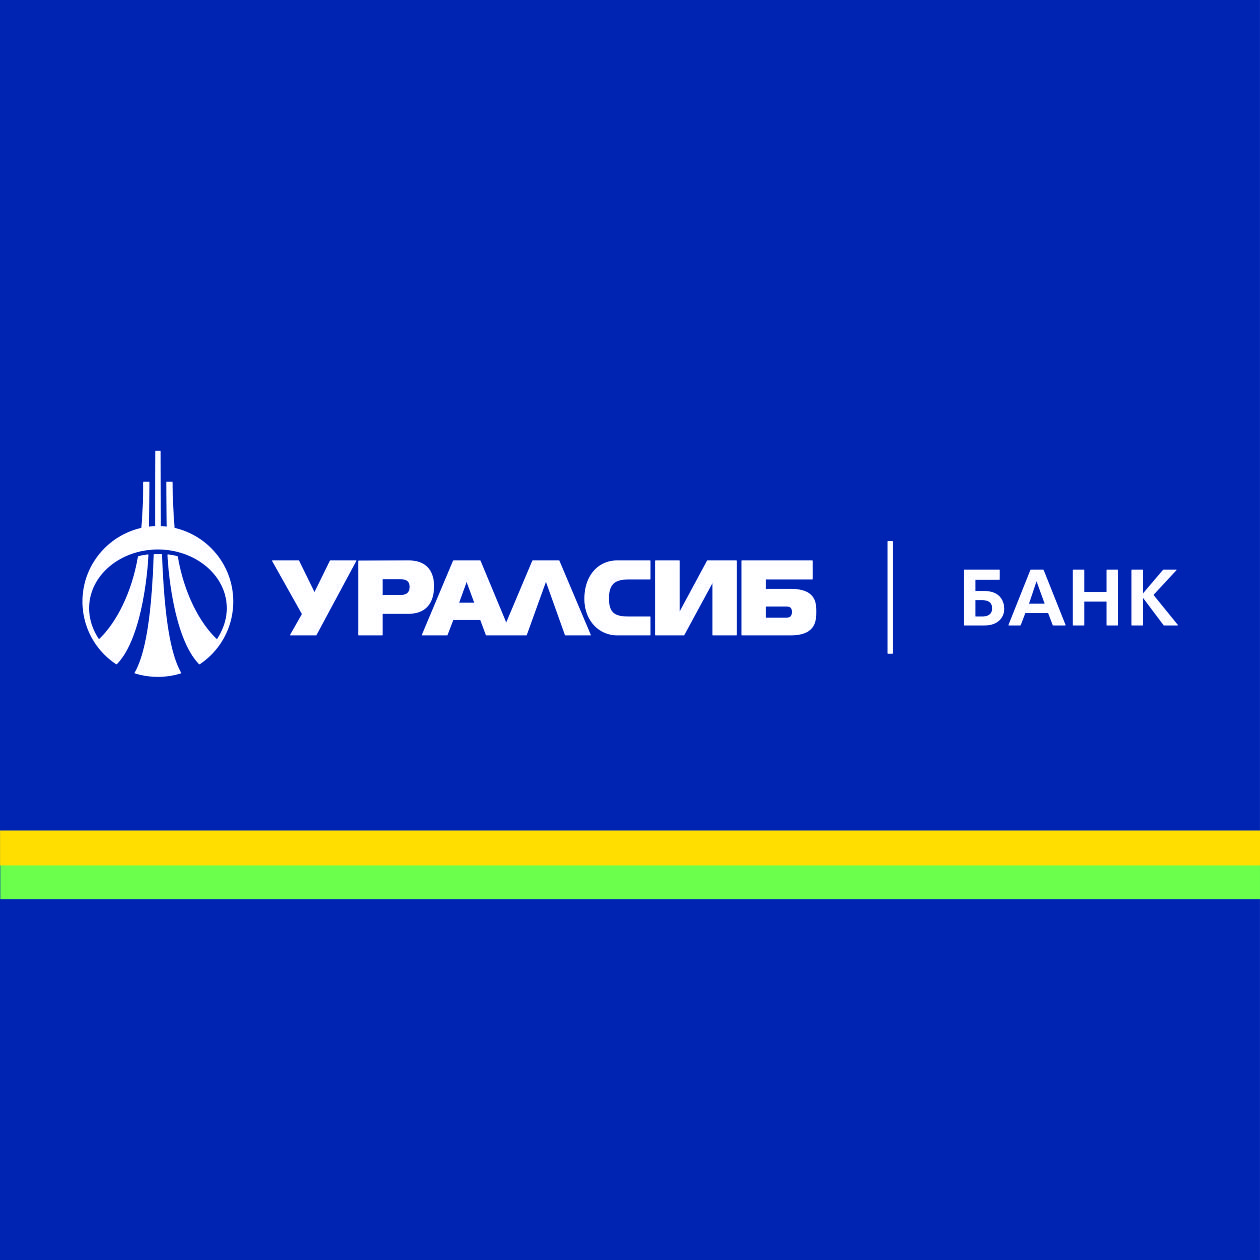 Банк УРАЛСИБ досрочно погасил займ Агентства по страхованию вкладов  в сумме 14 млрд рублей